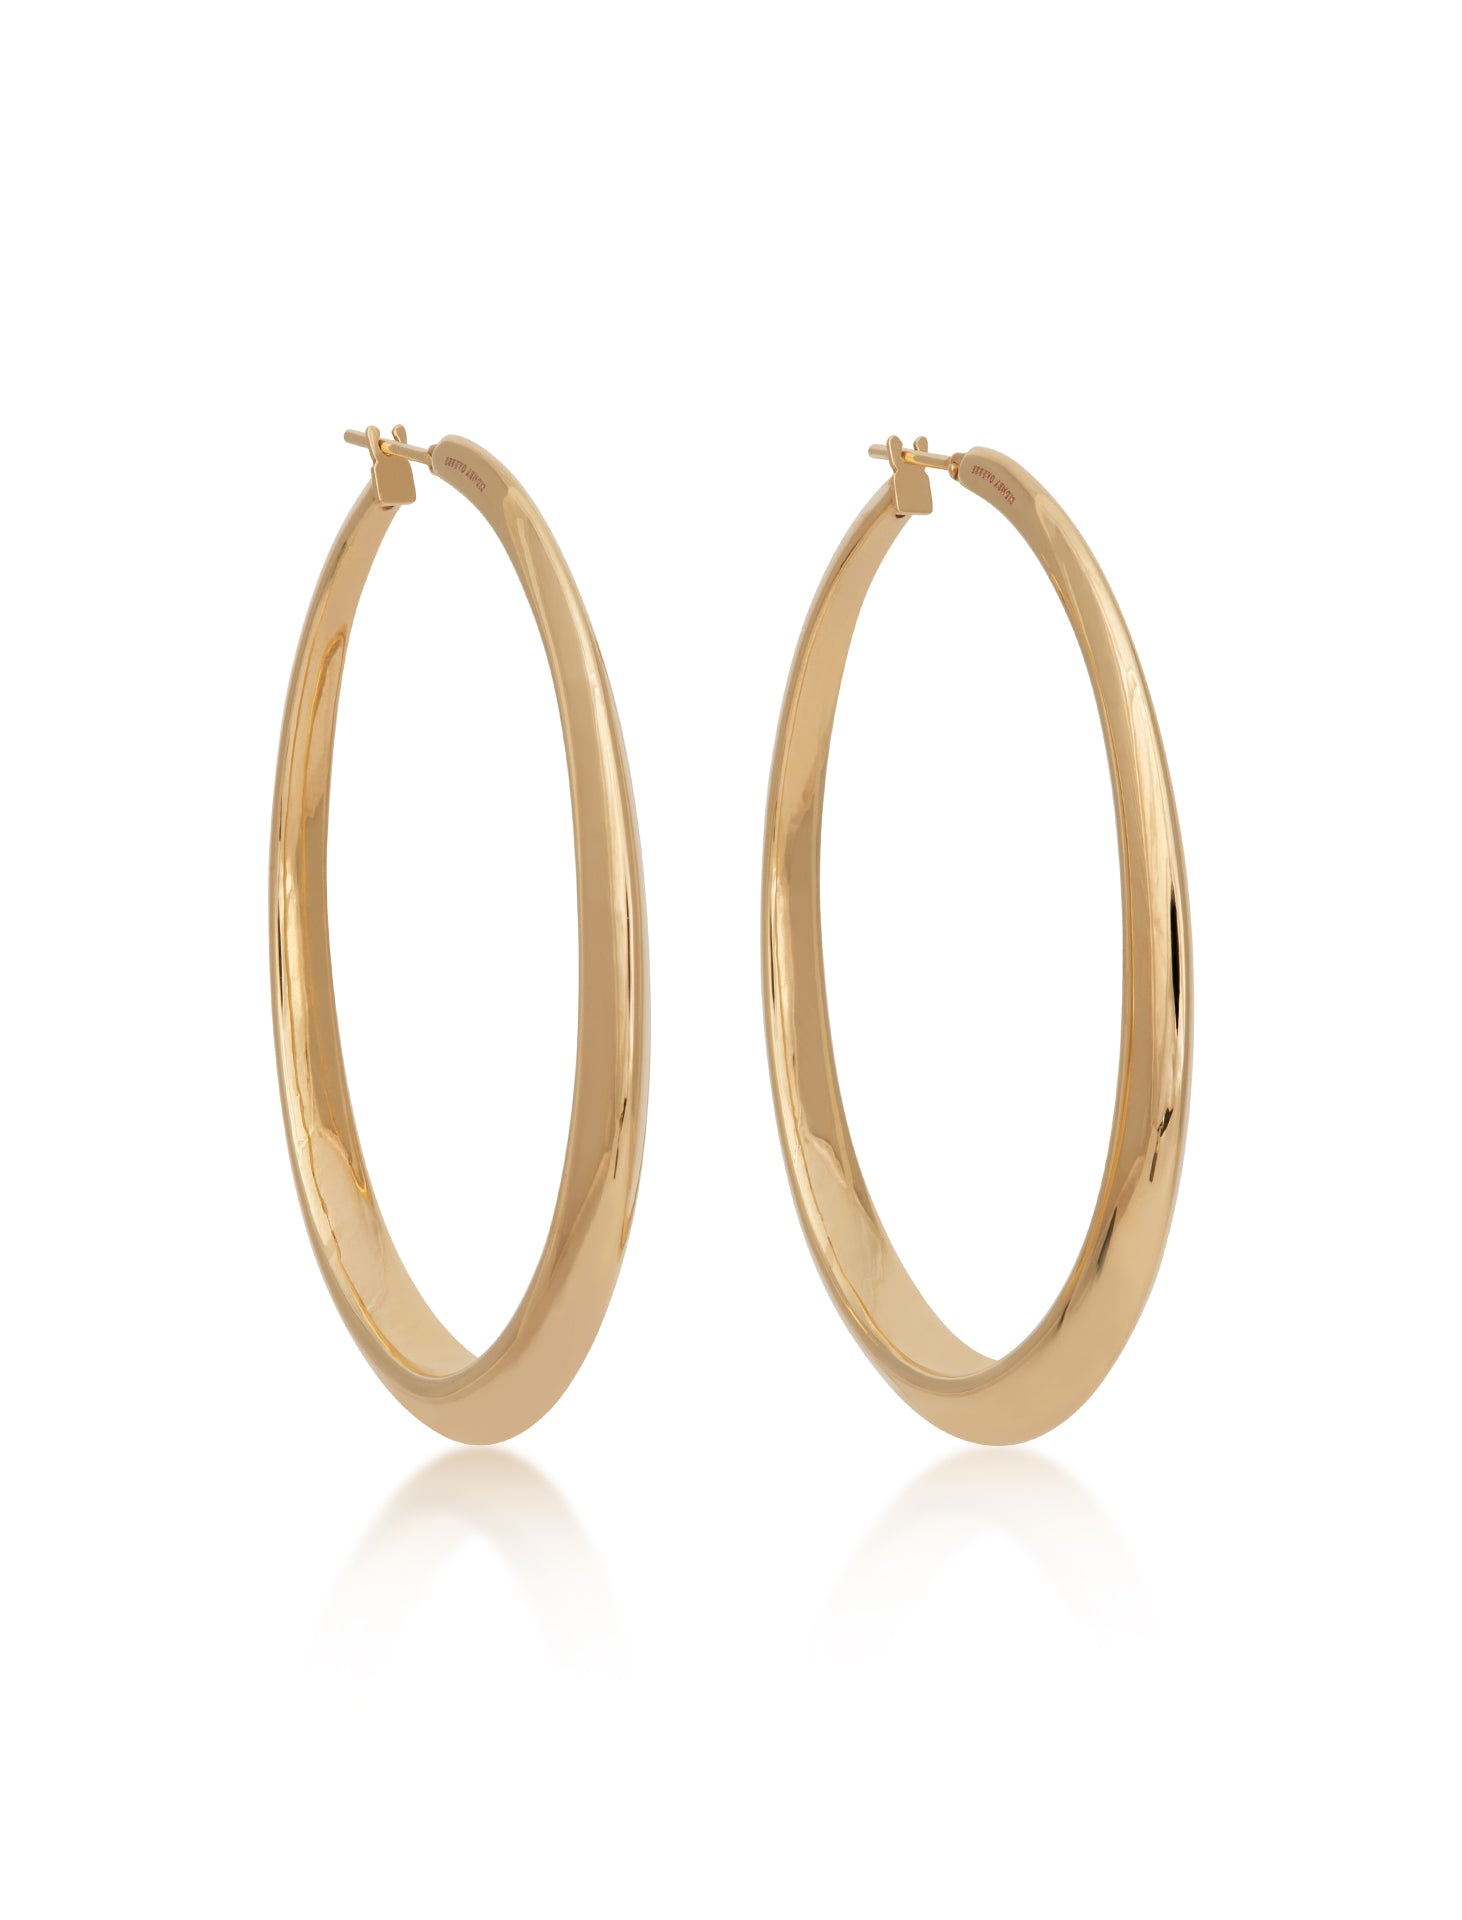 Oval Hoop, 18K Yellow Gold Earrings